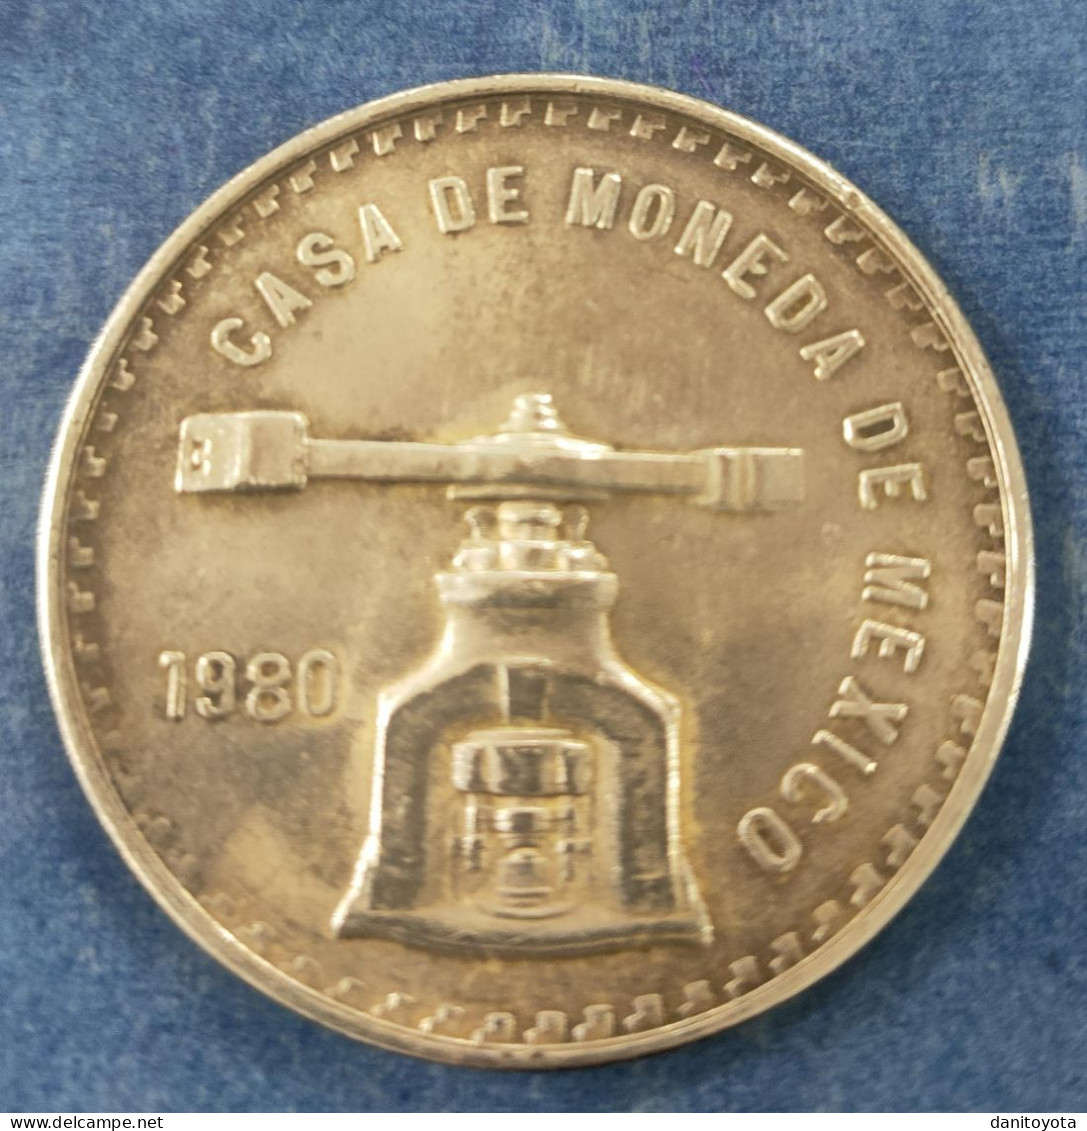 MEXICO. AÑO 1980. 1 ONZA TROY CASA DE MEXICO. PESO 33,6 GR - Mexico